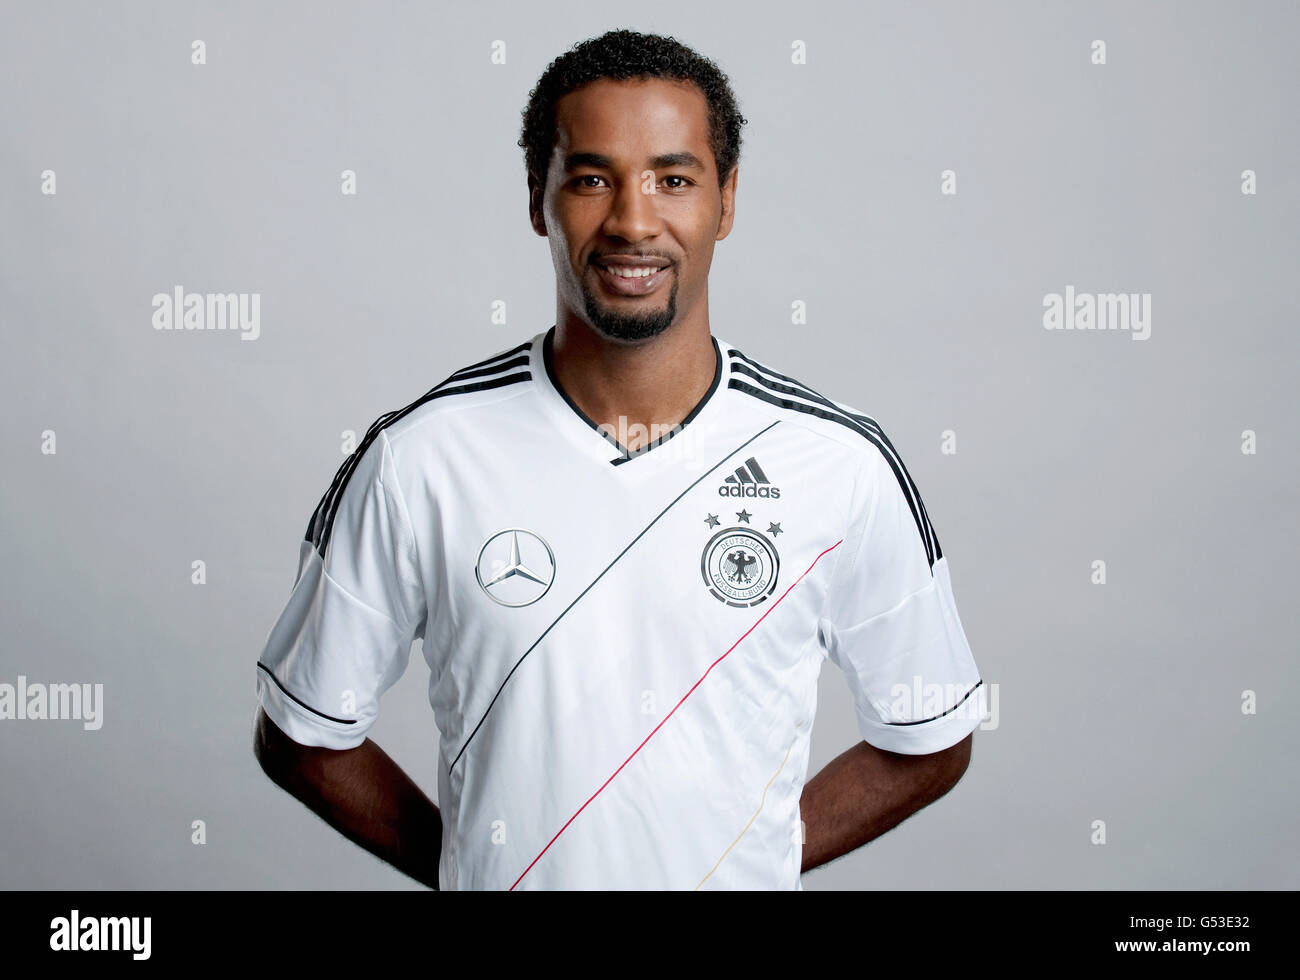 Cacau, sur le site officiel de portrait photo session de l'allemand, l'équipe nationale de football sur 14.11.2011, Hambourg Banque D'Images